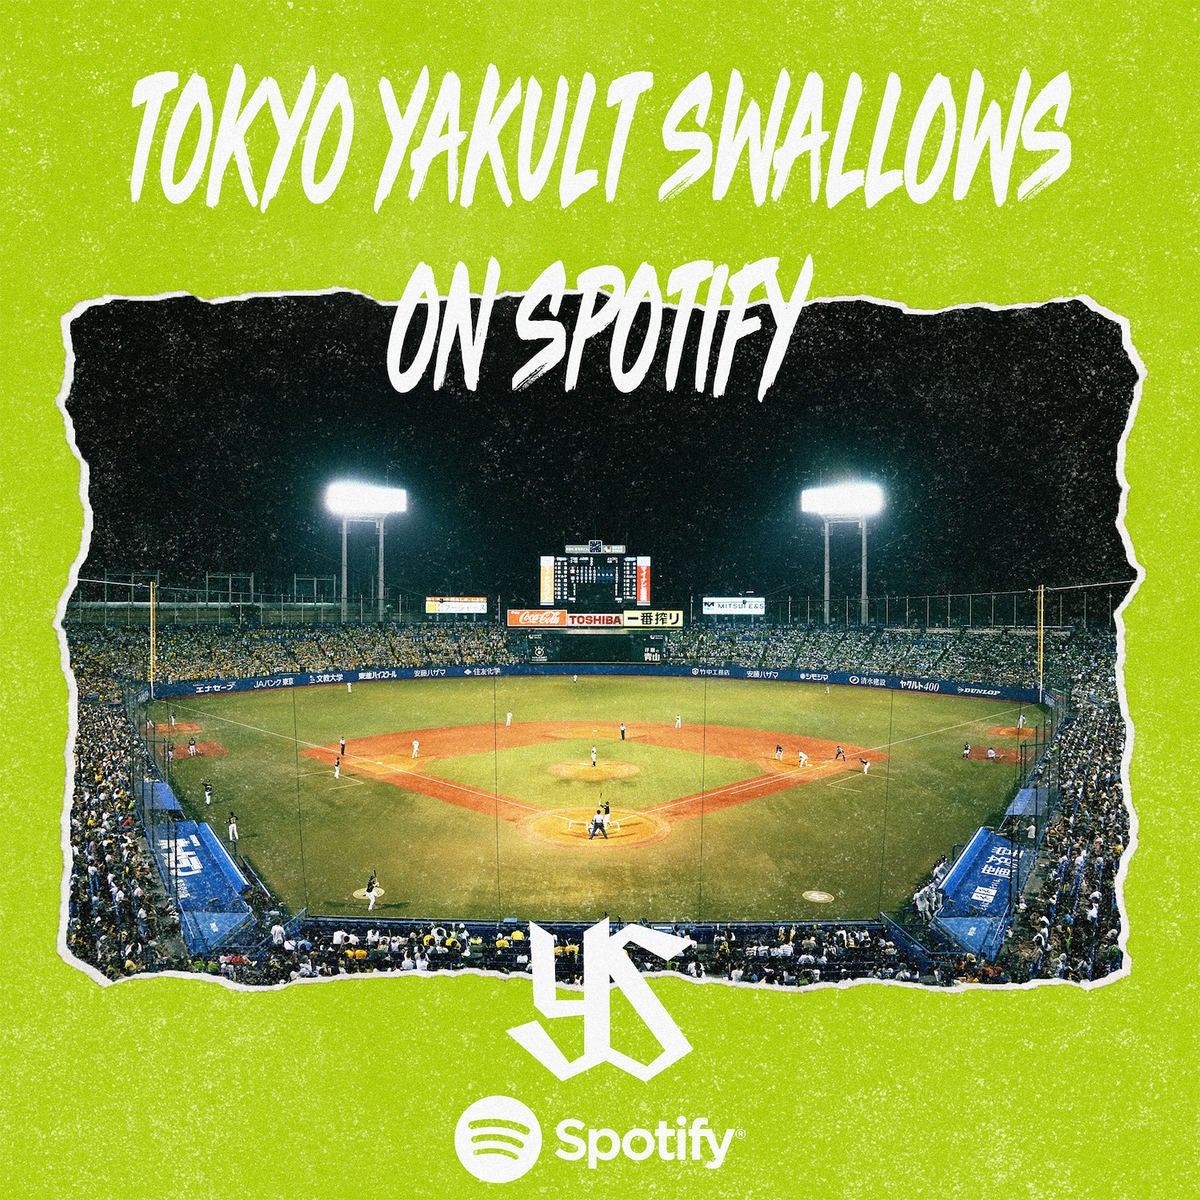 プロ野球チーム初 東京ヤクルトスワローズがspotify公式アカウントを開設 マイナビニュース